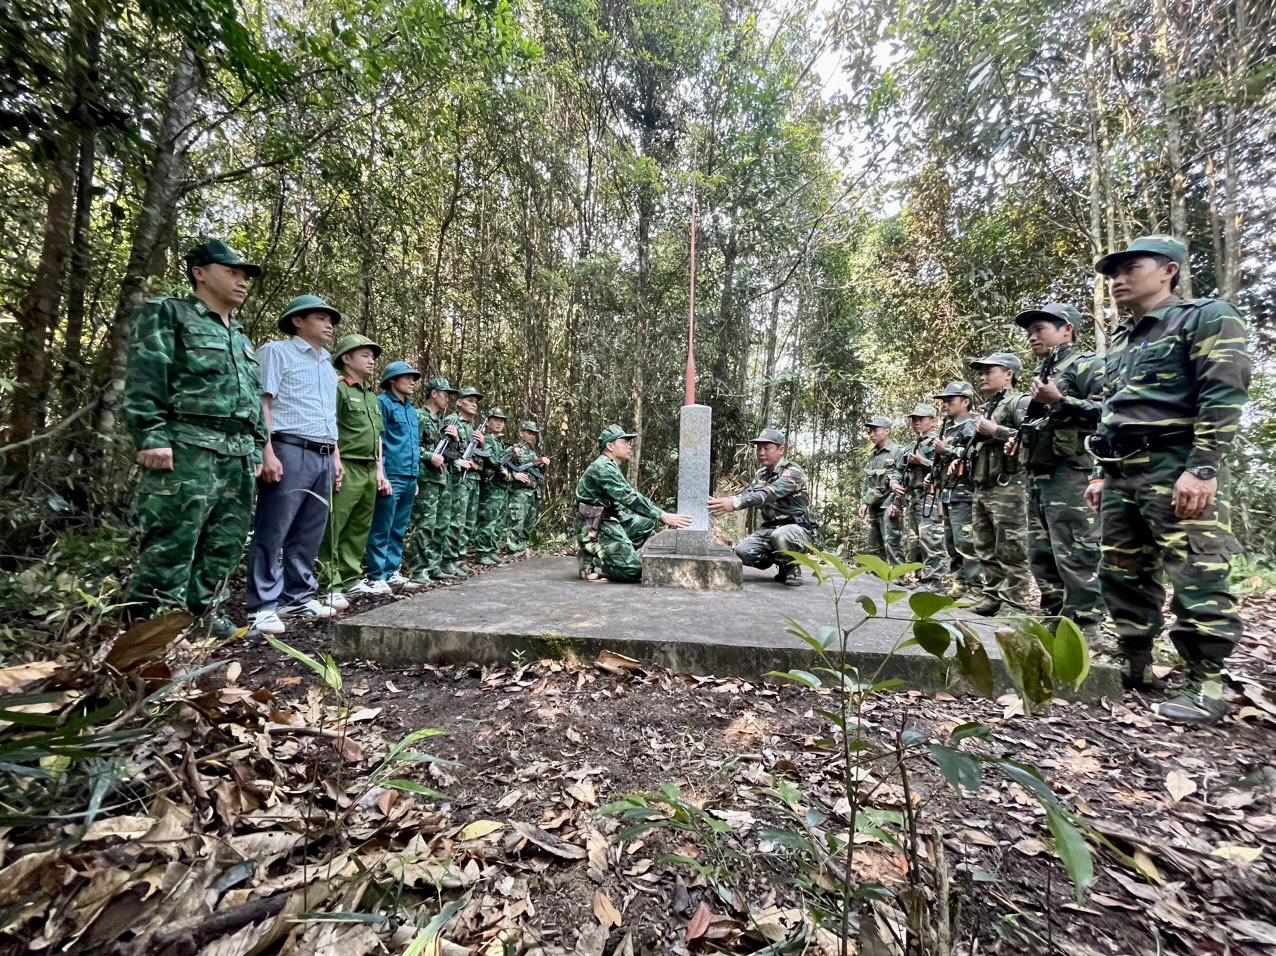 Đội hình tuần tra Đồn BP Tri Lễ, BĐBP Nghệ An cùng các lực lượng xã Tri Lễ, huyện Quế Phong và Đại đội Biên phòng 217 (Hủa Phăn, Lào) tuần tra song phương biên giới Việt Nam - Lào. 